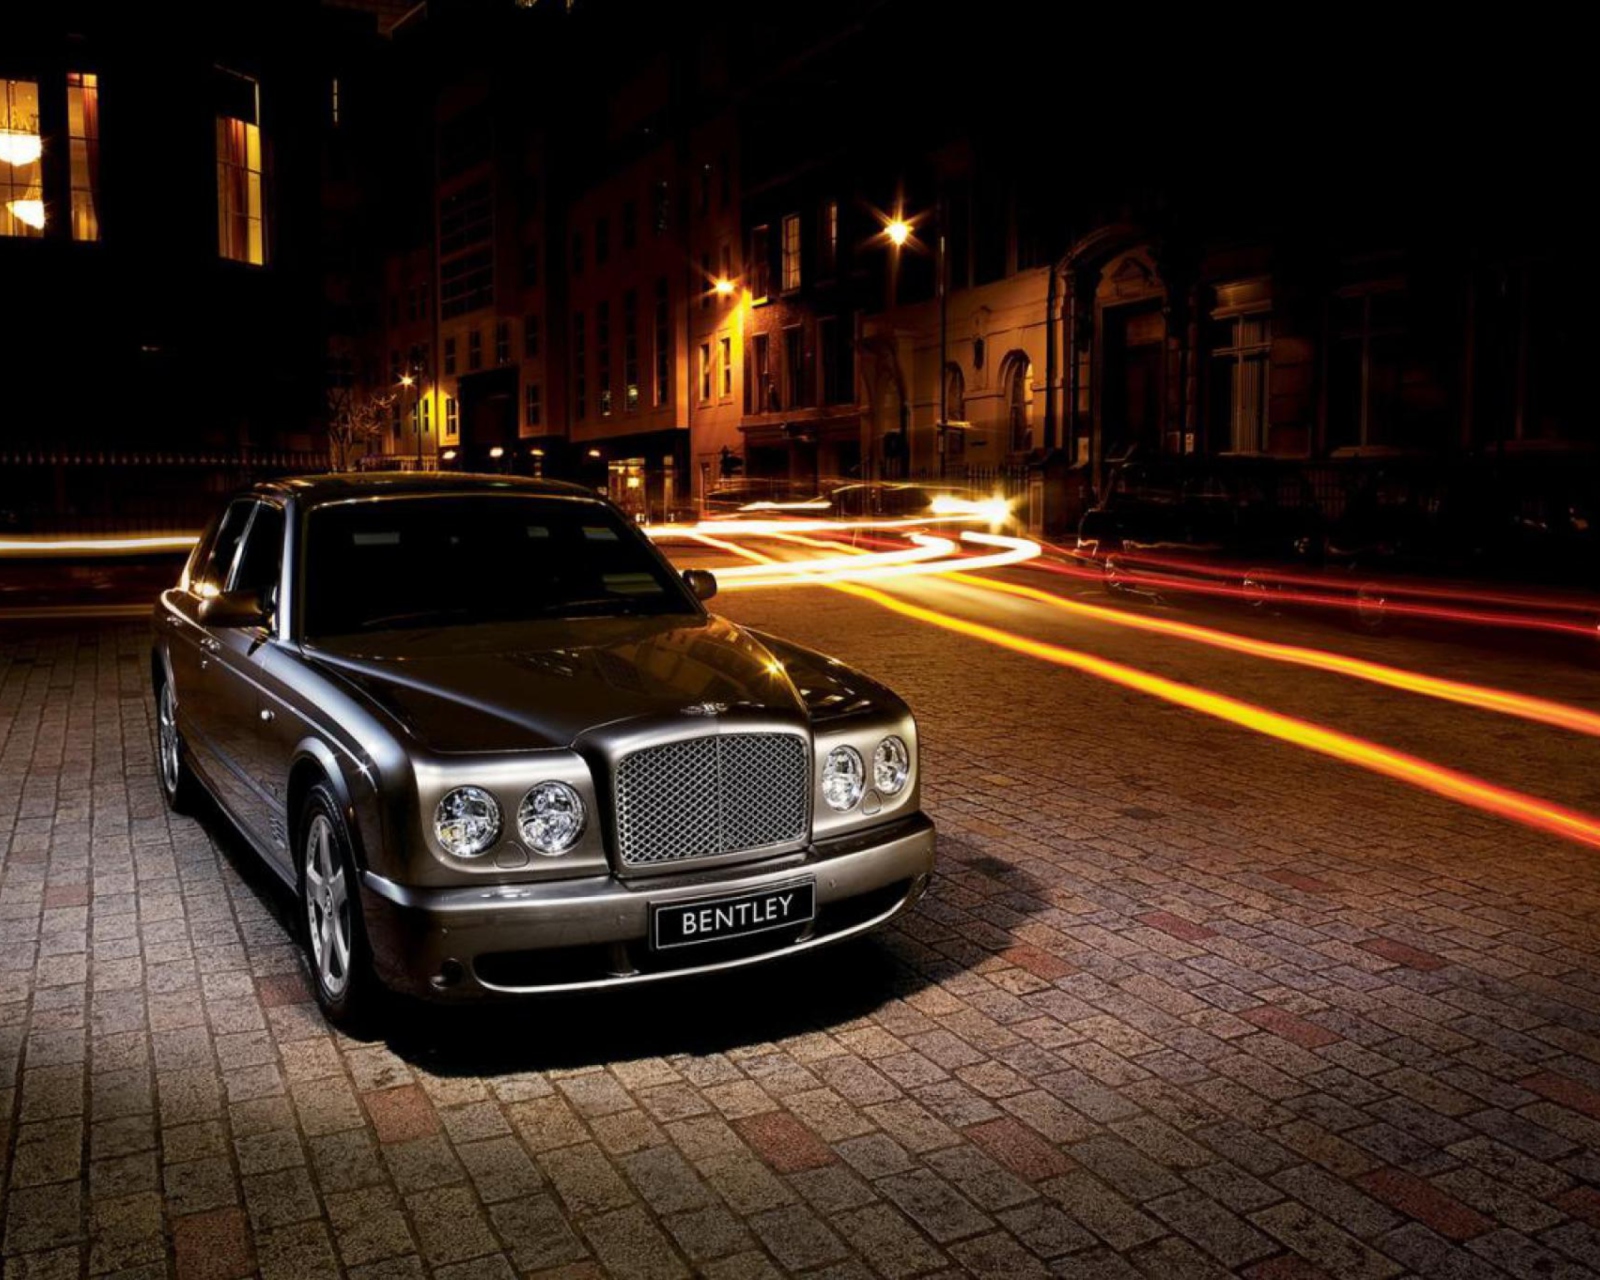 Night Bentley wallpaper 1600x1280